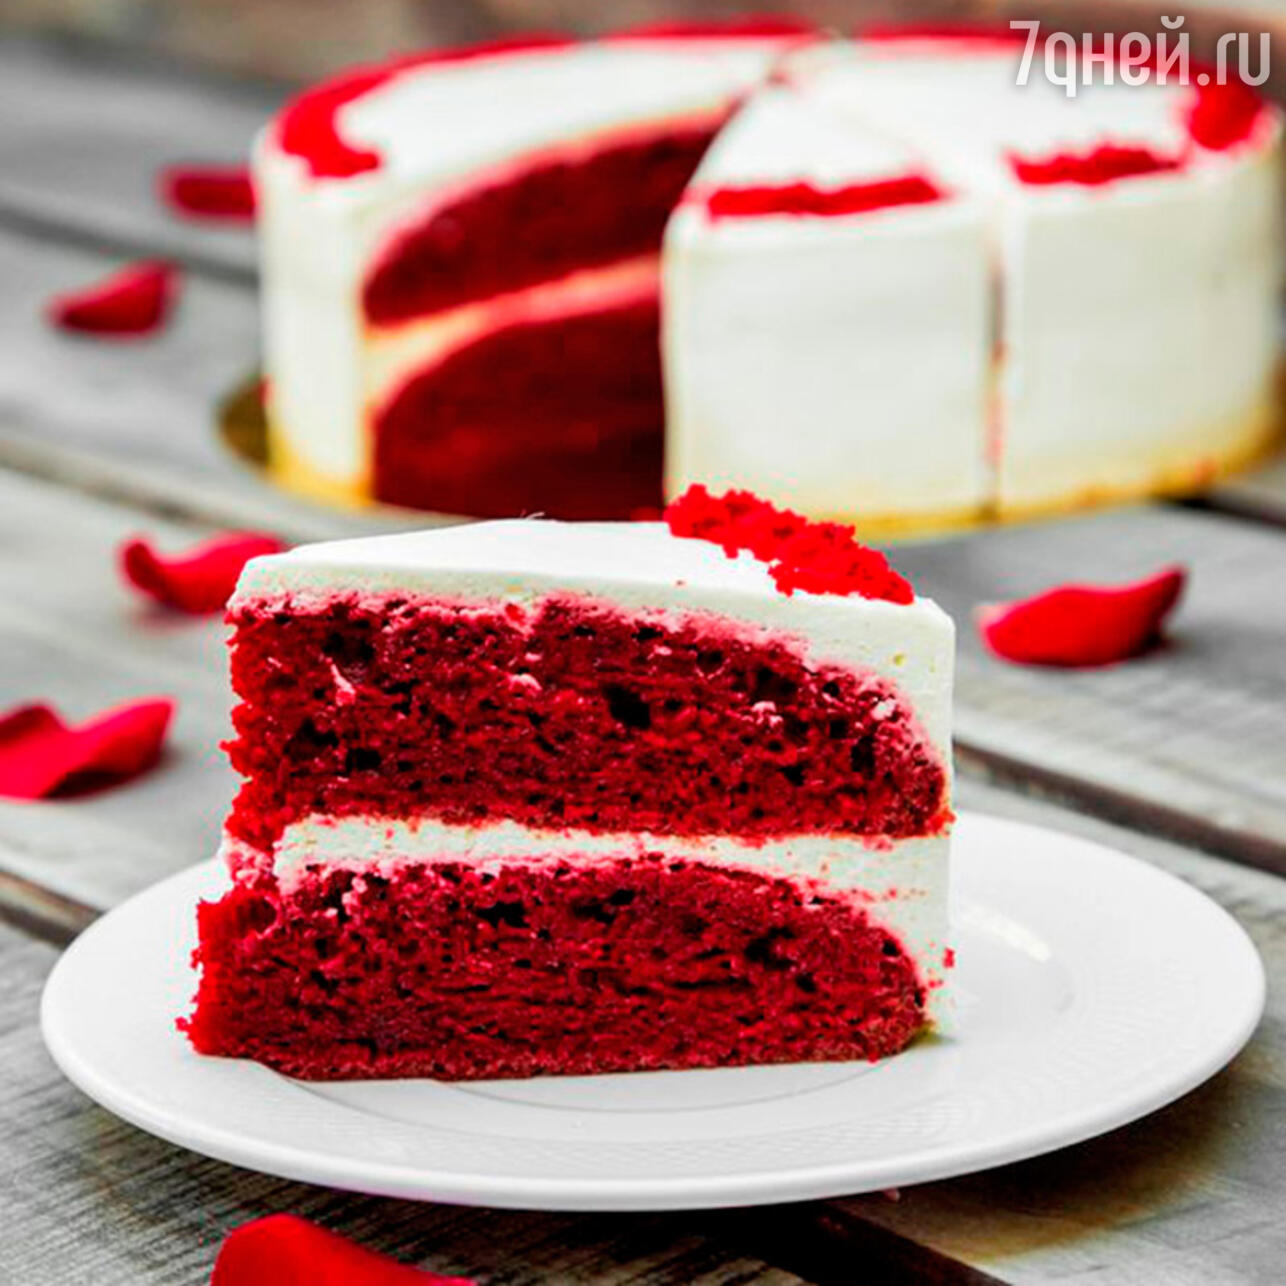 Как украсить торт Красный бархат клубникой